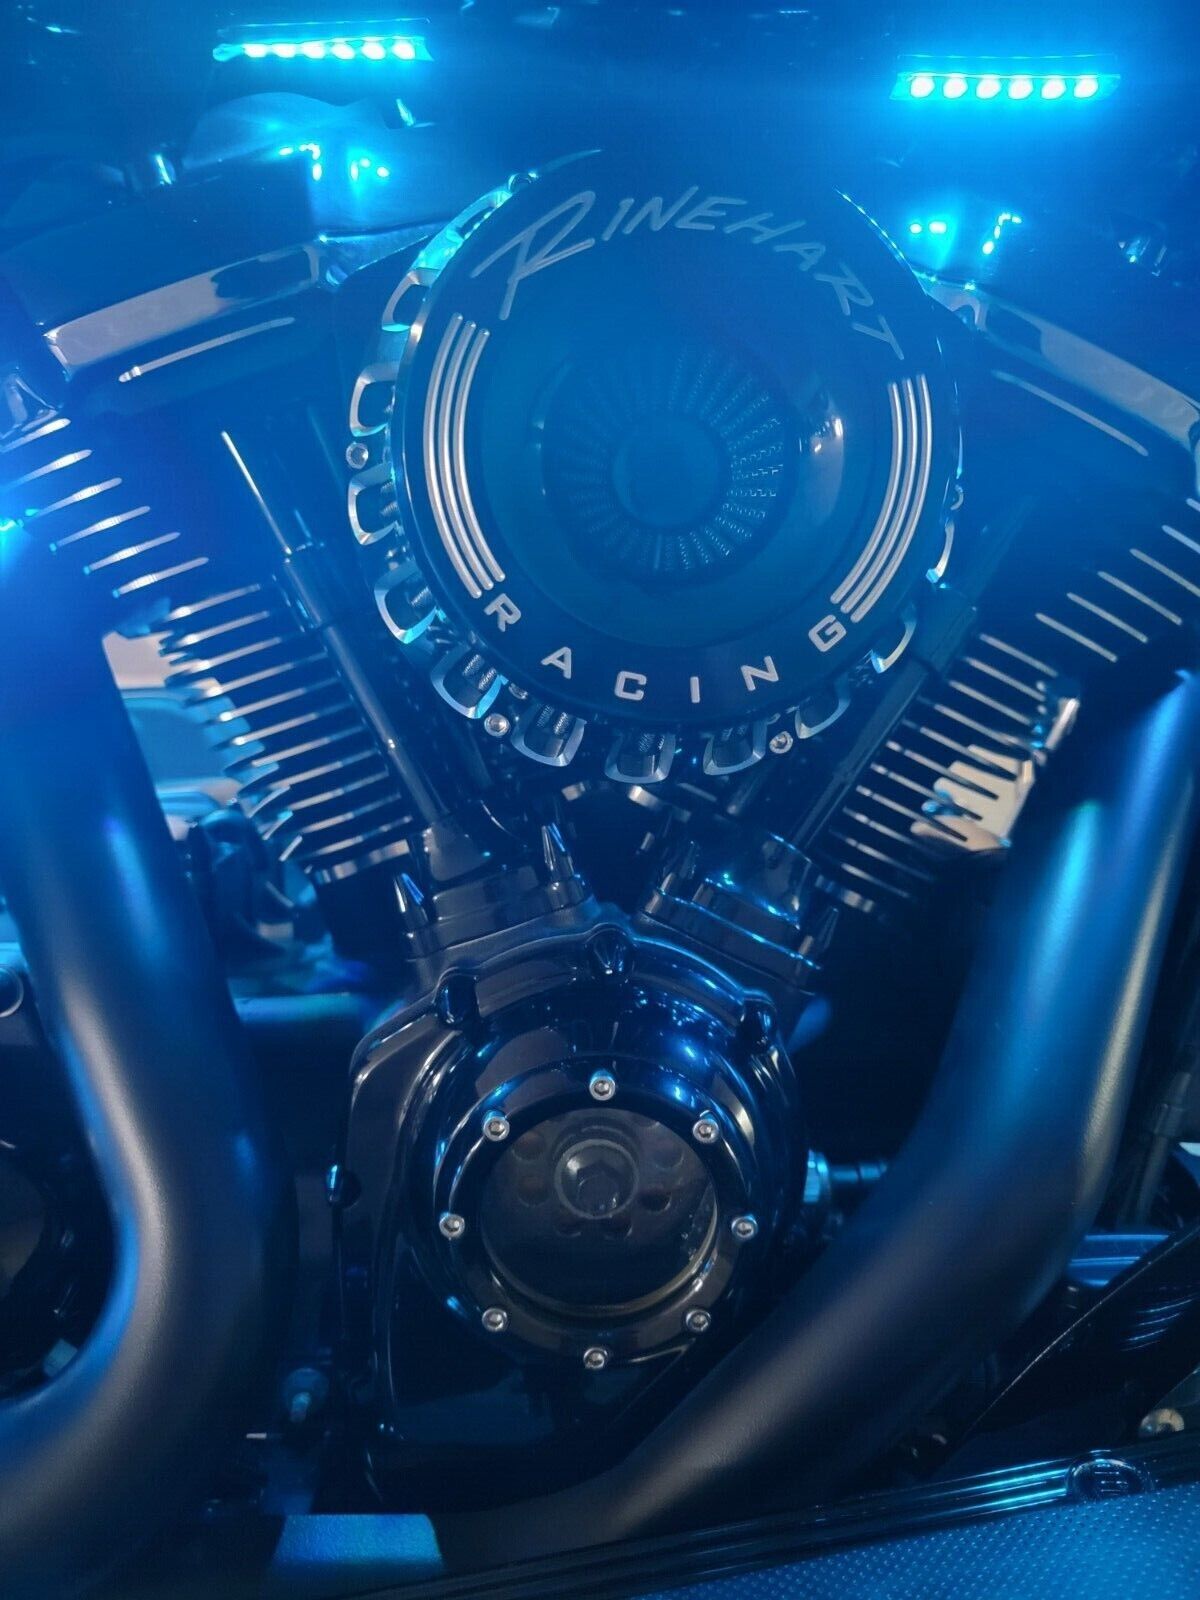 2021 Harley-Davidson Touring 